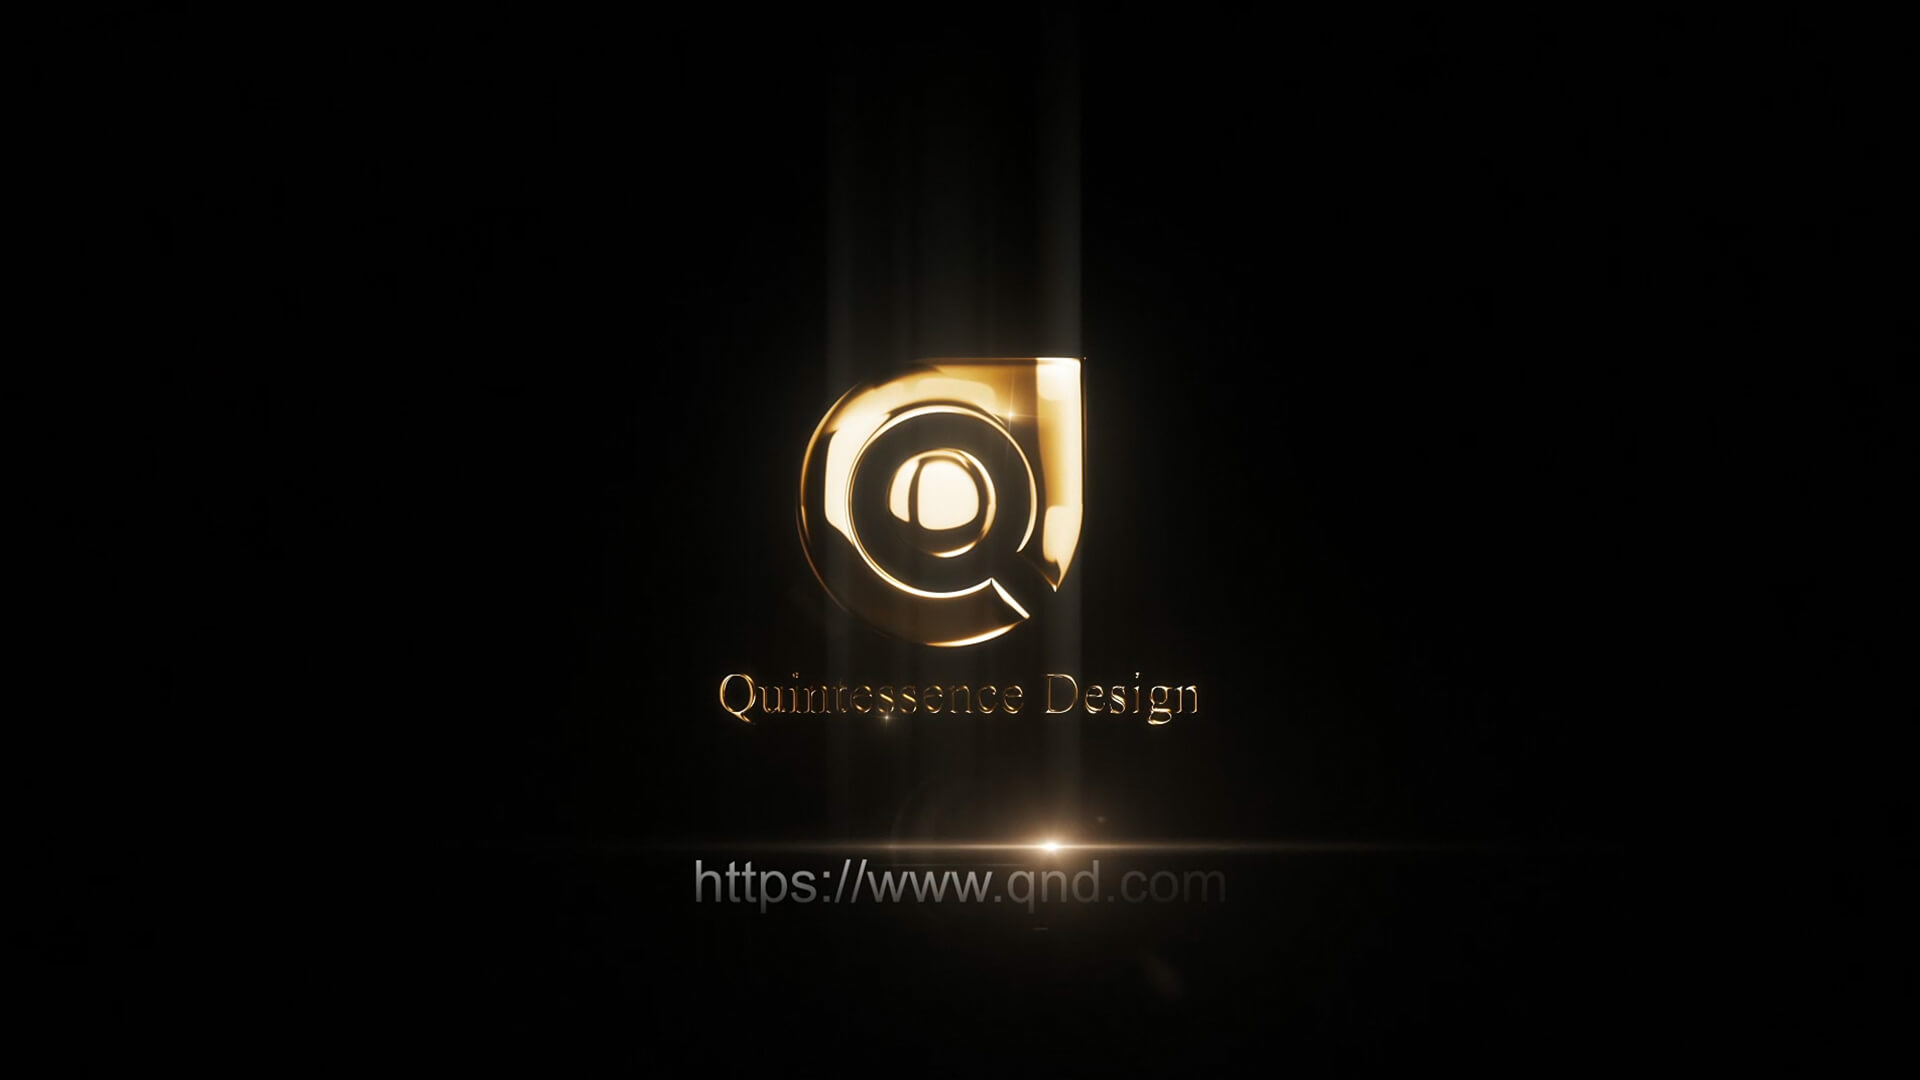 【品牌形象篇】: Q&D Quintessence Design 形象片